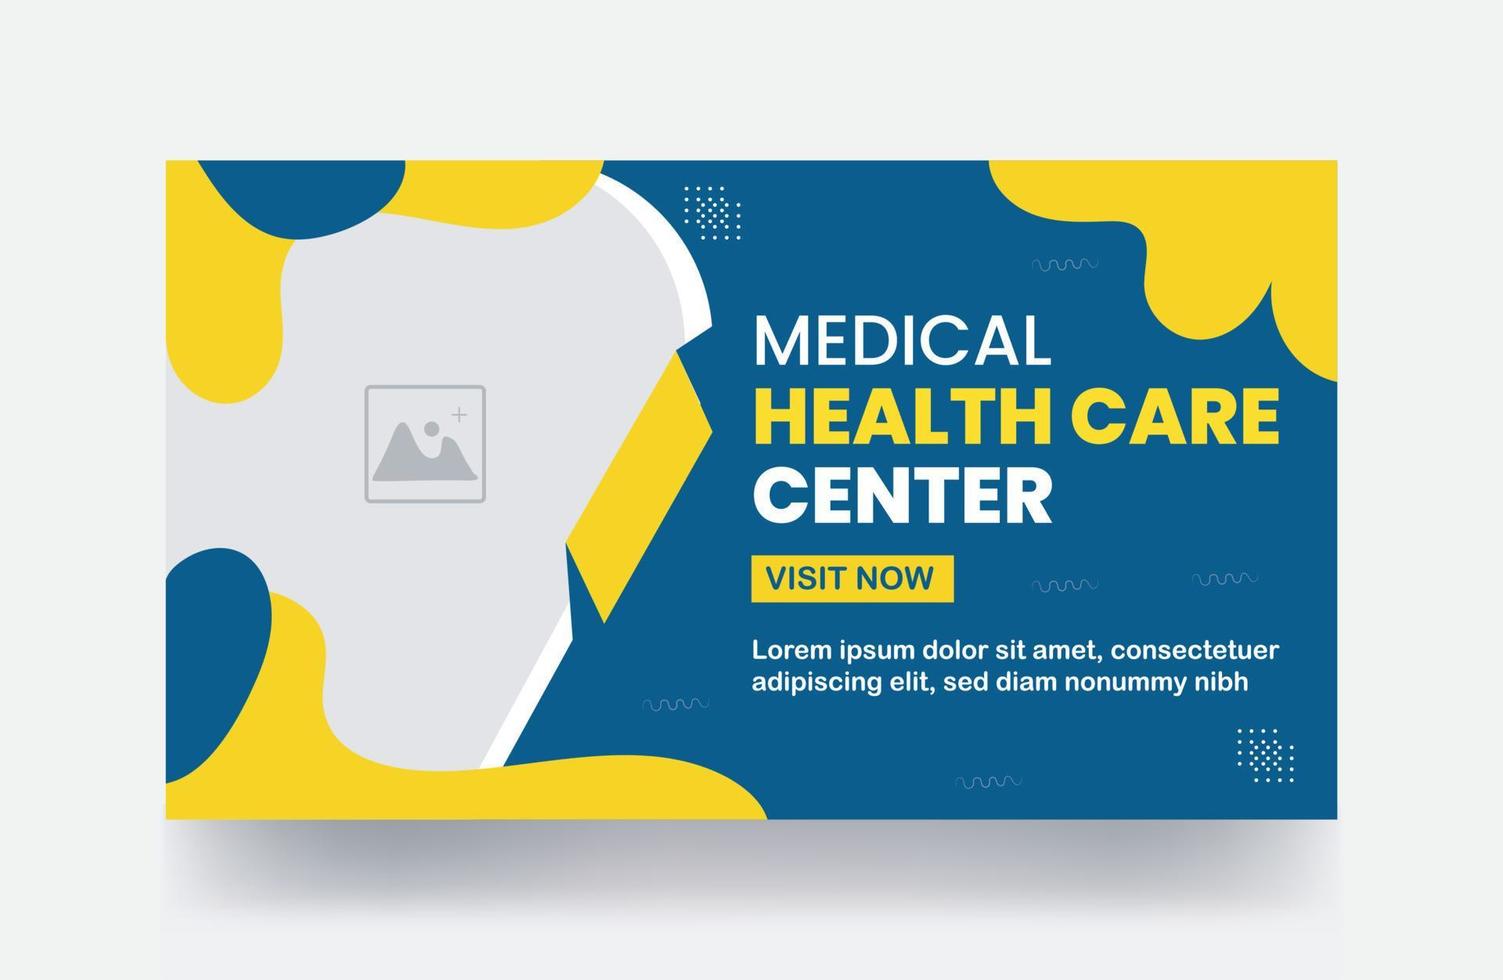 conception de vignettes médicales couverture vidéo modèle de vignettes de service de santé vecteur